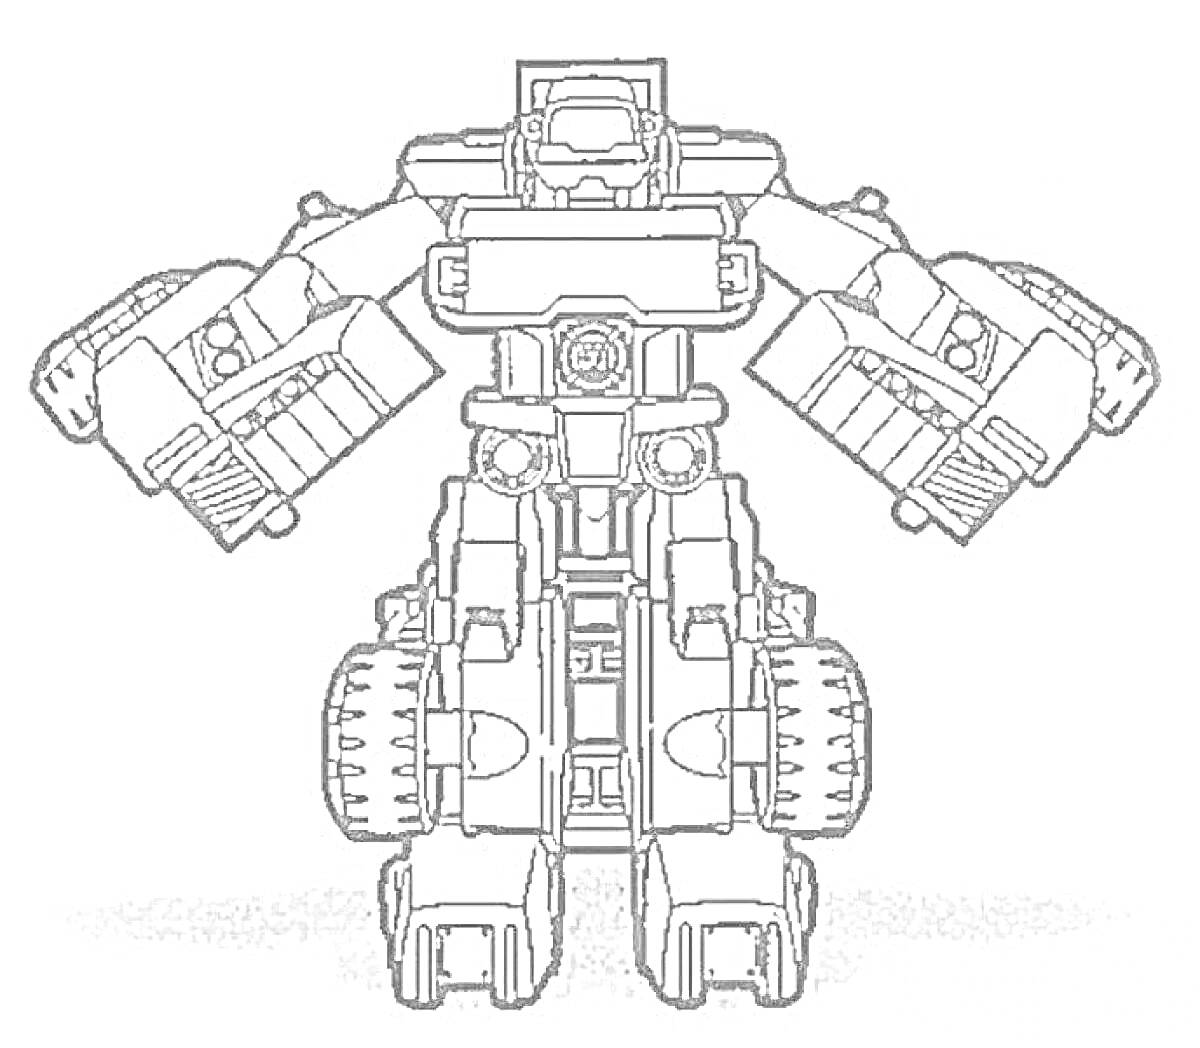 робот с массивными плечами, прямоугольной головой, детализированным корпусом и колесами на ногах